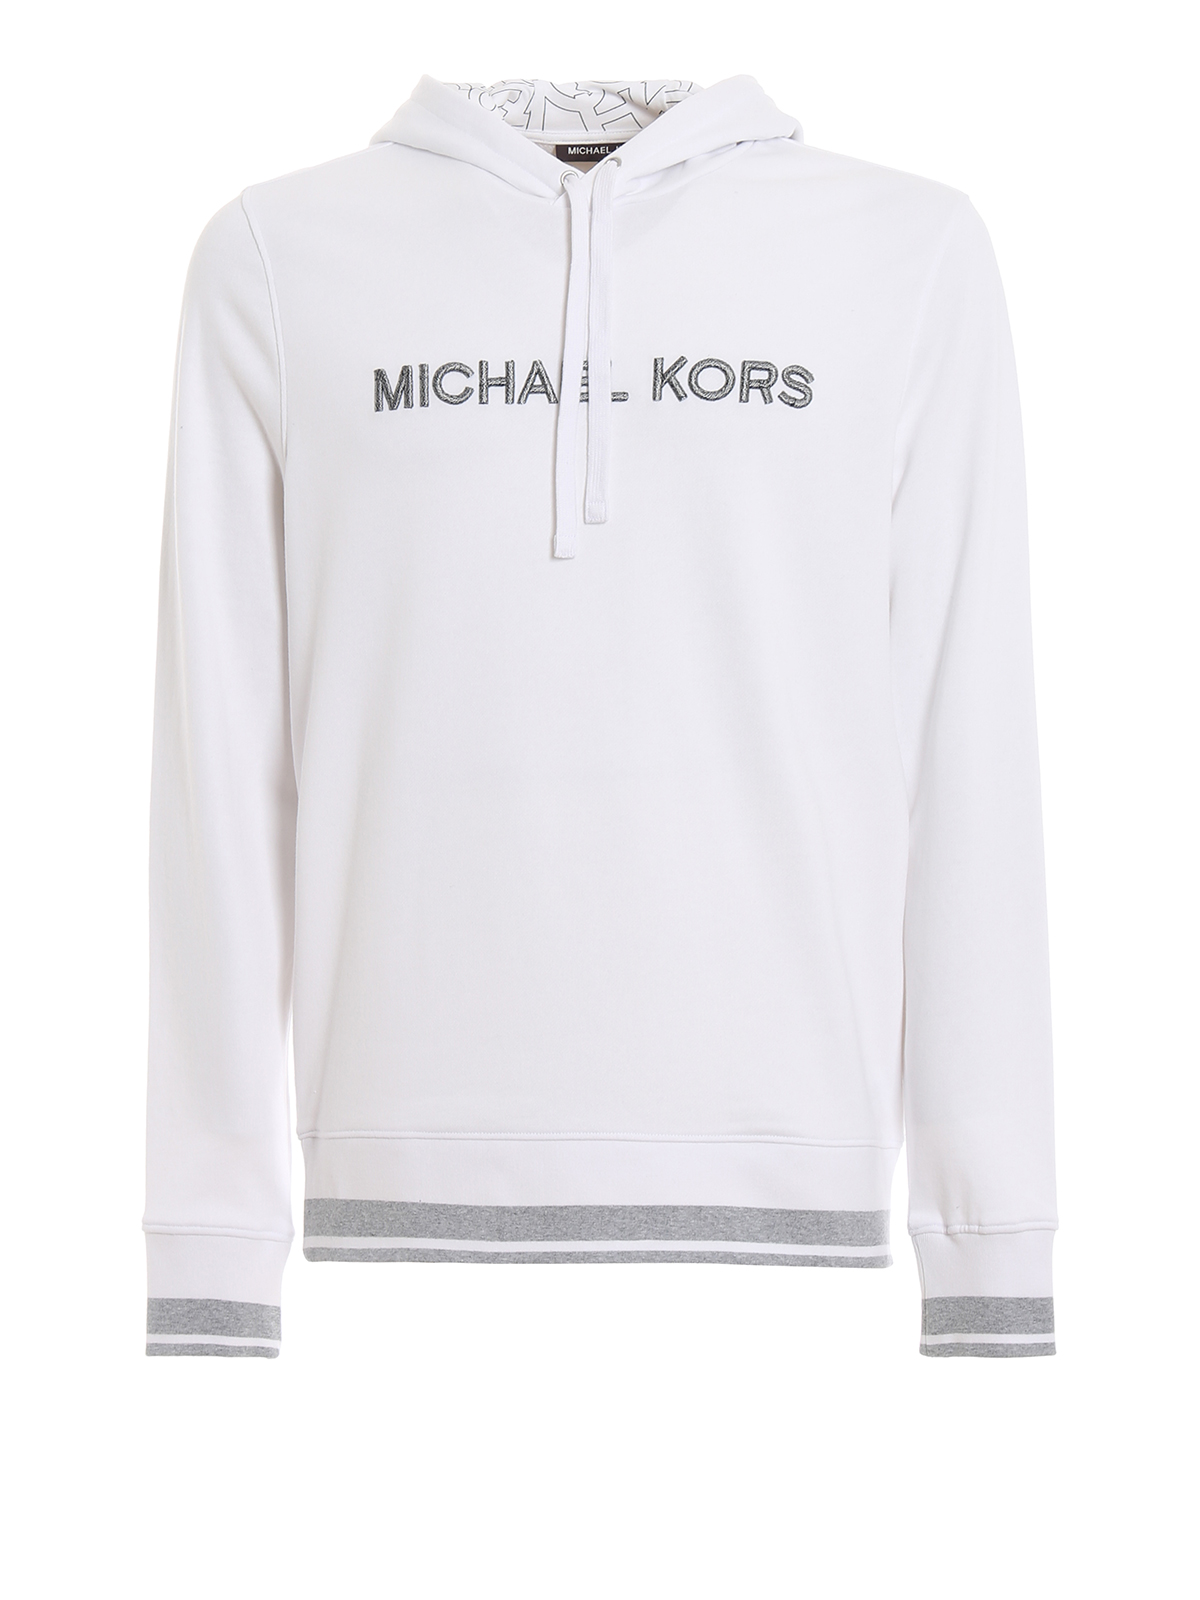 michael kors white sweatshirt